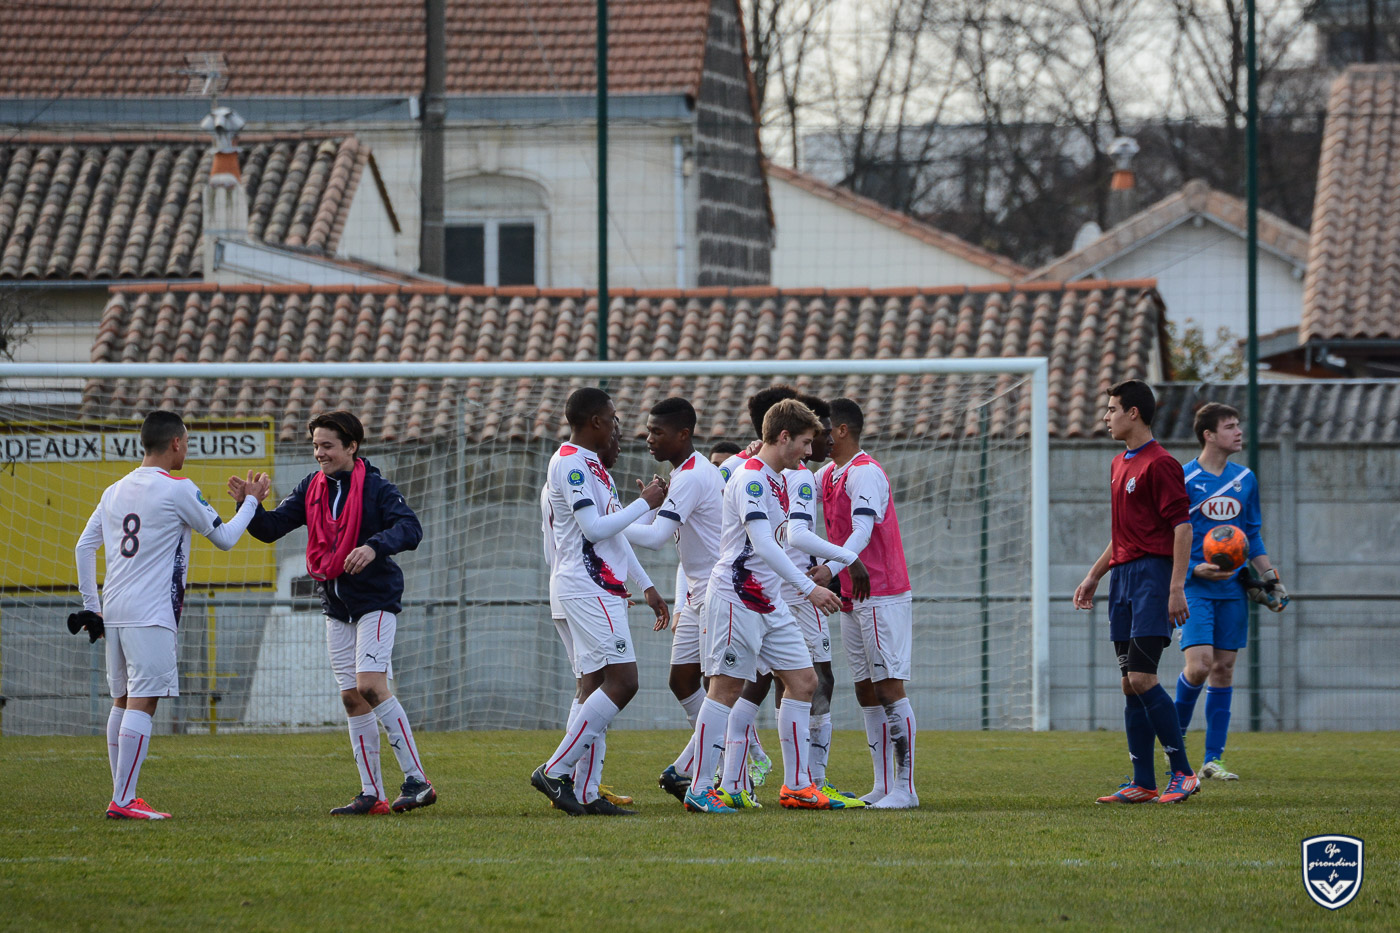 Cfa Girondins : U17 Nationaux : Vainqueurs 7-1 contre Poitiers et champions de la poule ! - Formation Girondins 